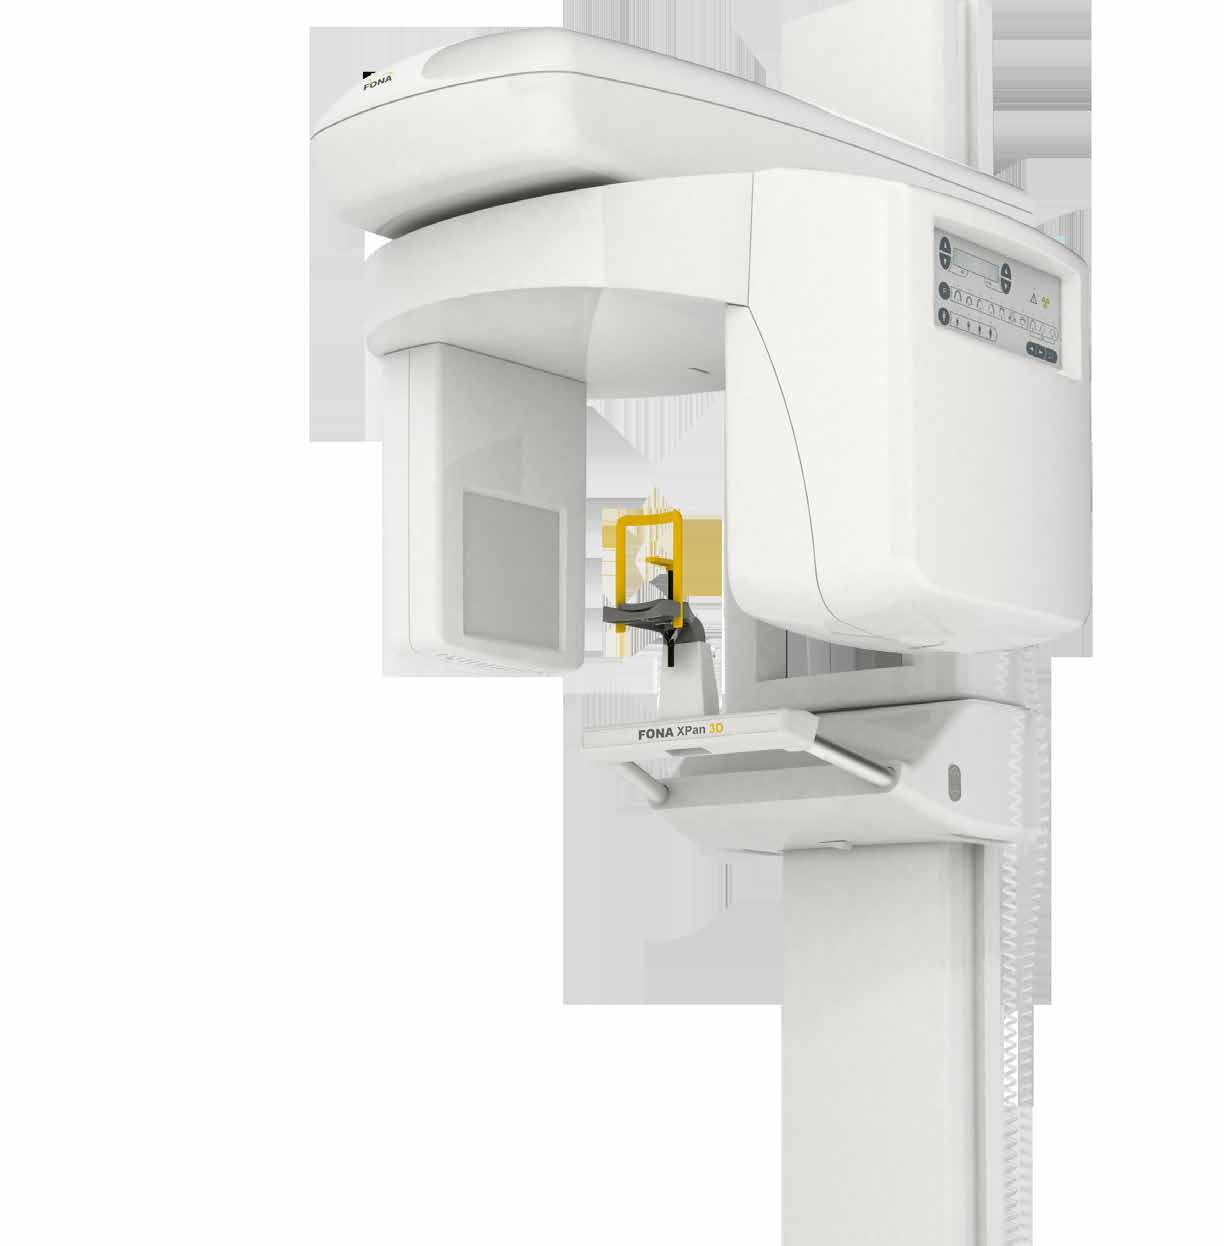 FONA XPan 3D 85x85 mm-es teljes látómező A 85x85 mm FOV (látómező) egyetlen exponálás